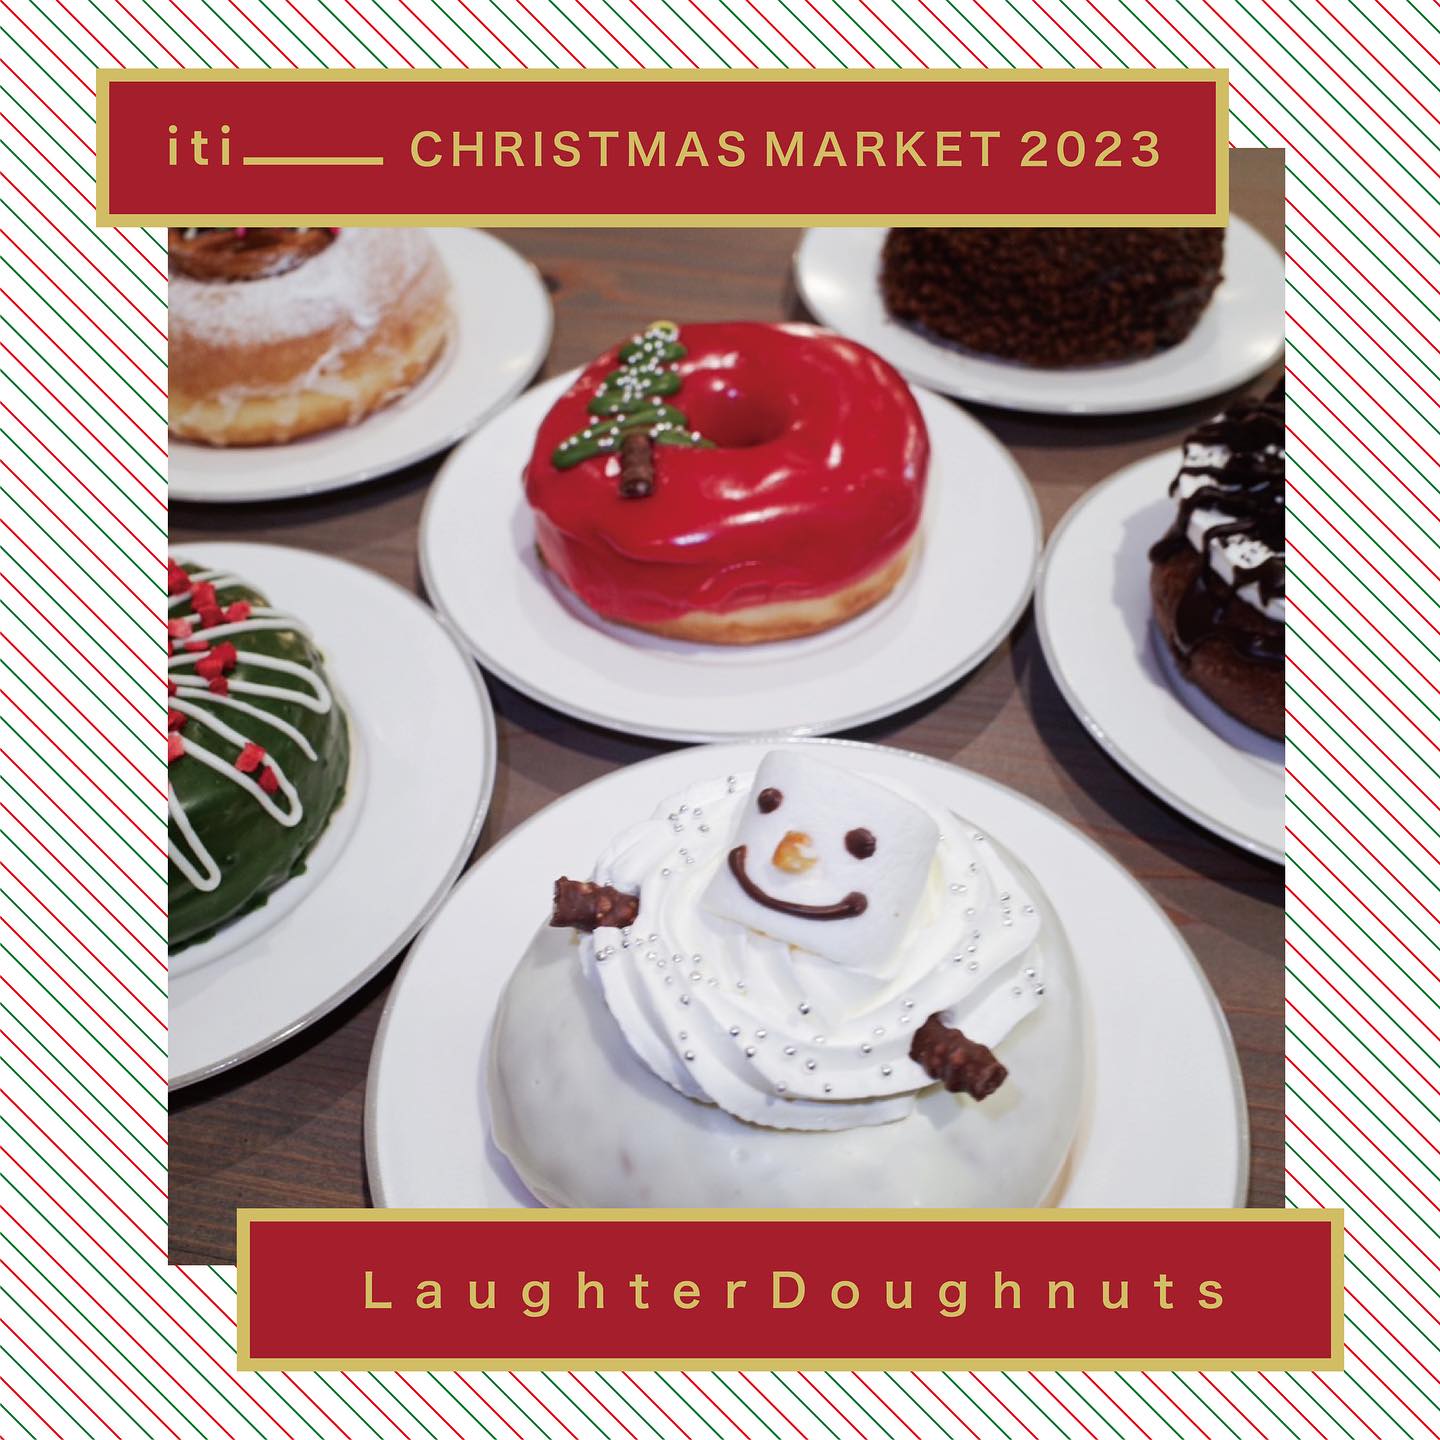 Laughter Doughnutsさんからクリスマス期間限定ドーナツが発売！